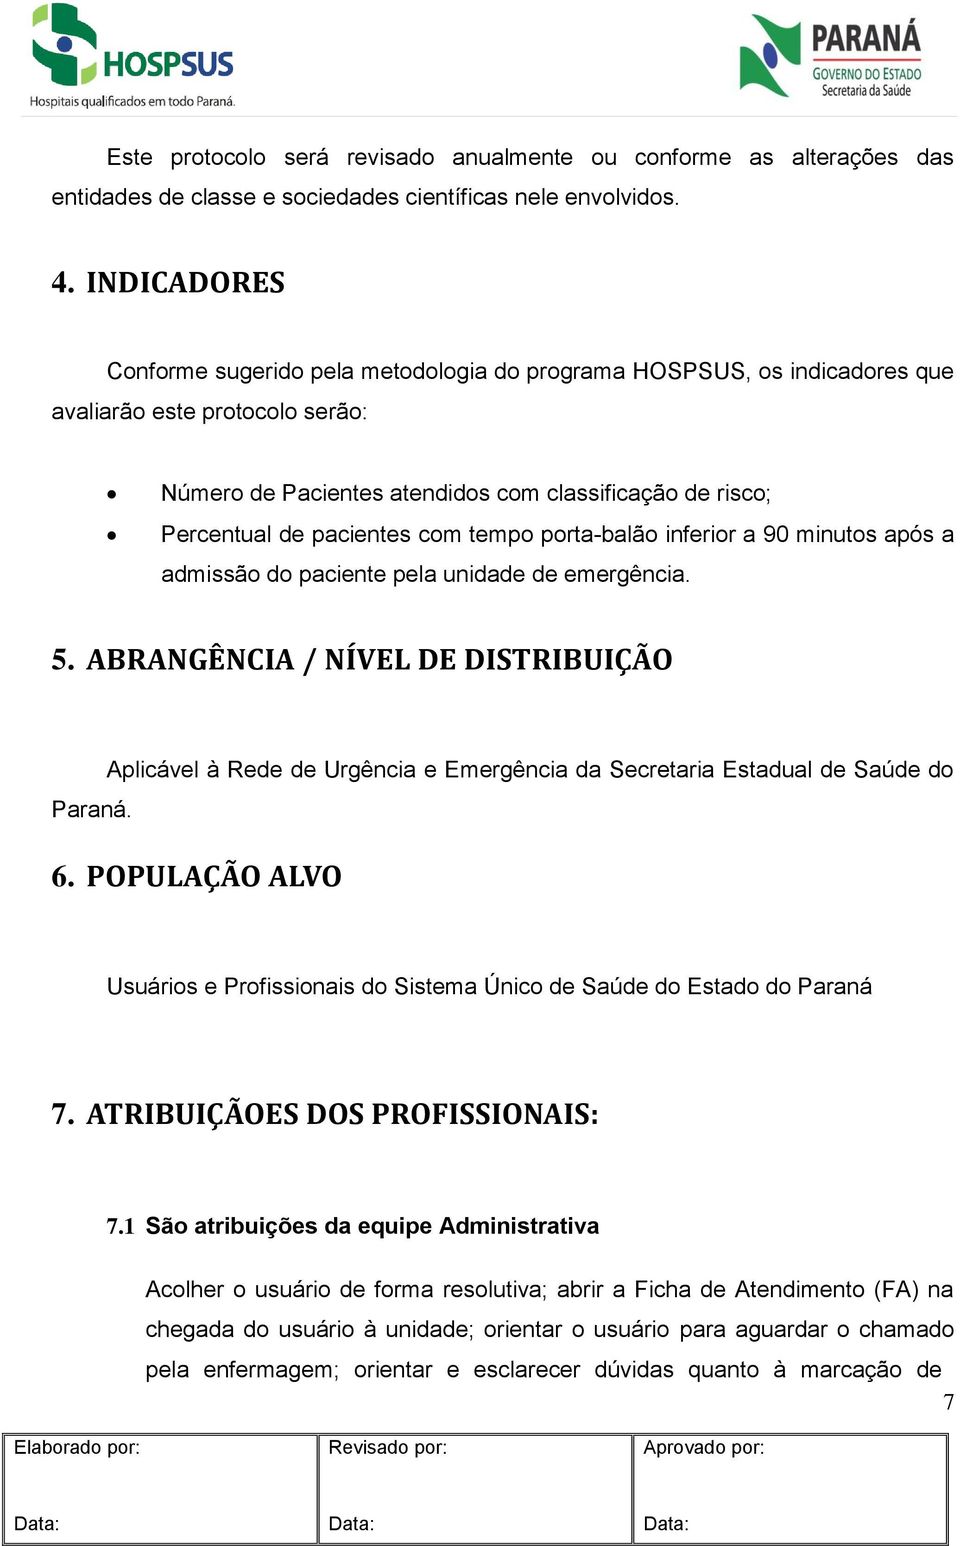 pacientes com tempo porta-balão inferior a 90 minutos após a admissão do paciente pela unidade de emergência. 5. ABRANGÊNCIA / NÍVEL DE DISTRIBUIÇÃO Paraná.